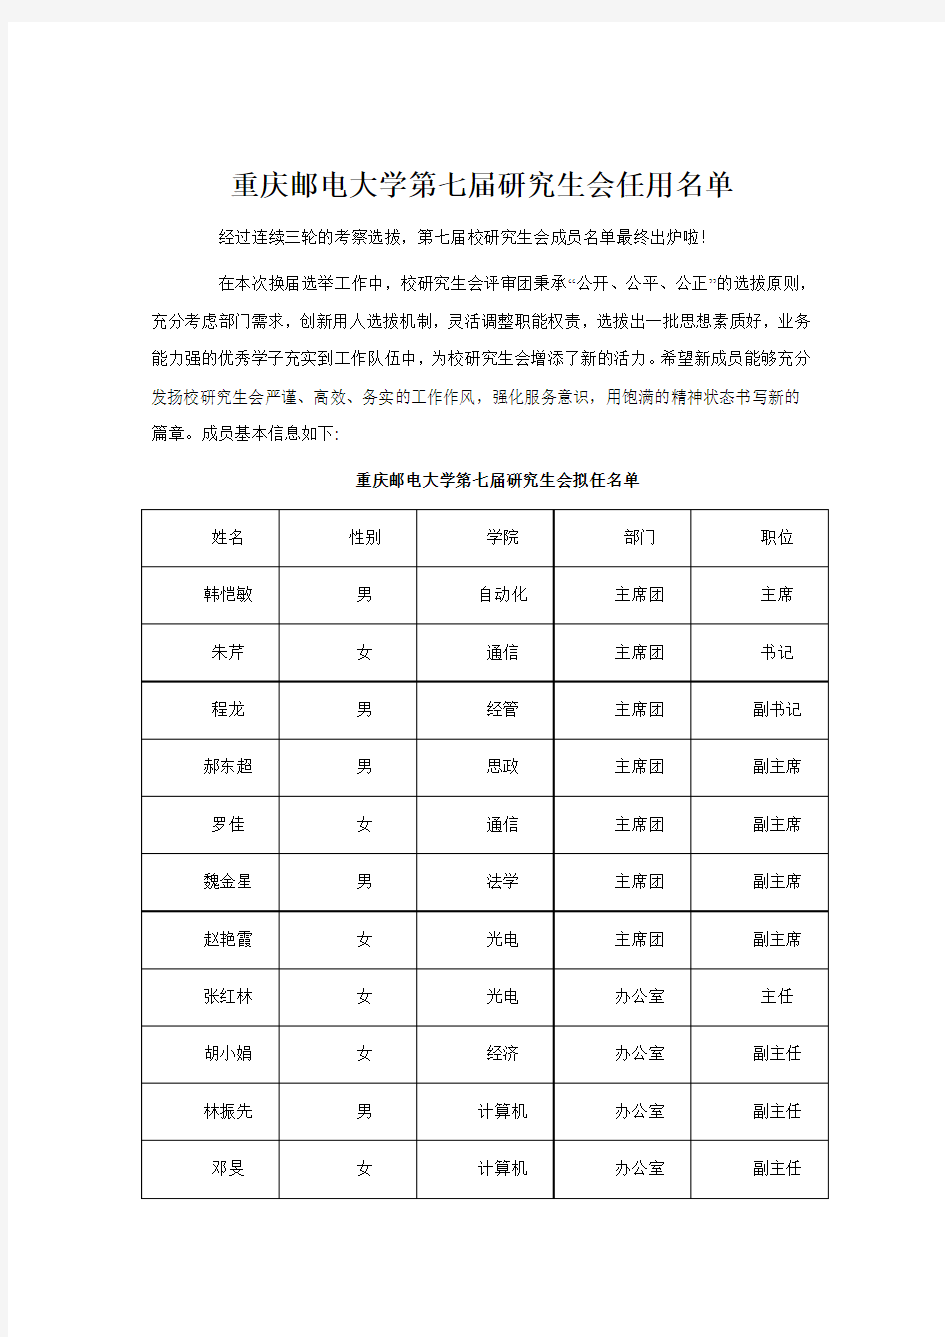 重庆邮电大学第七届研究生会任用名单